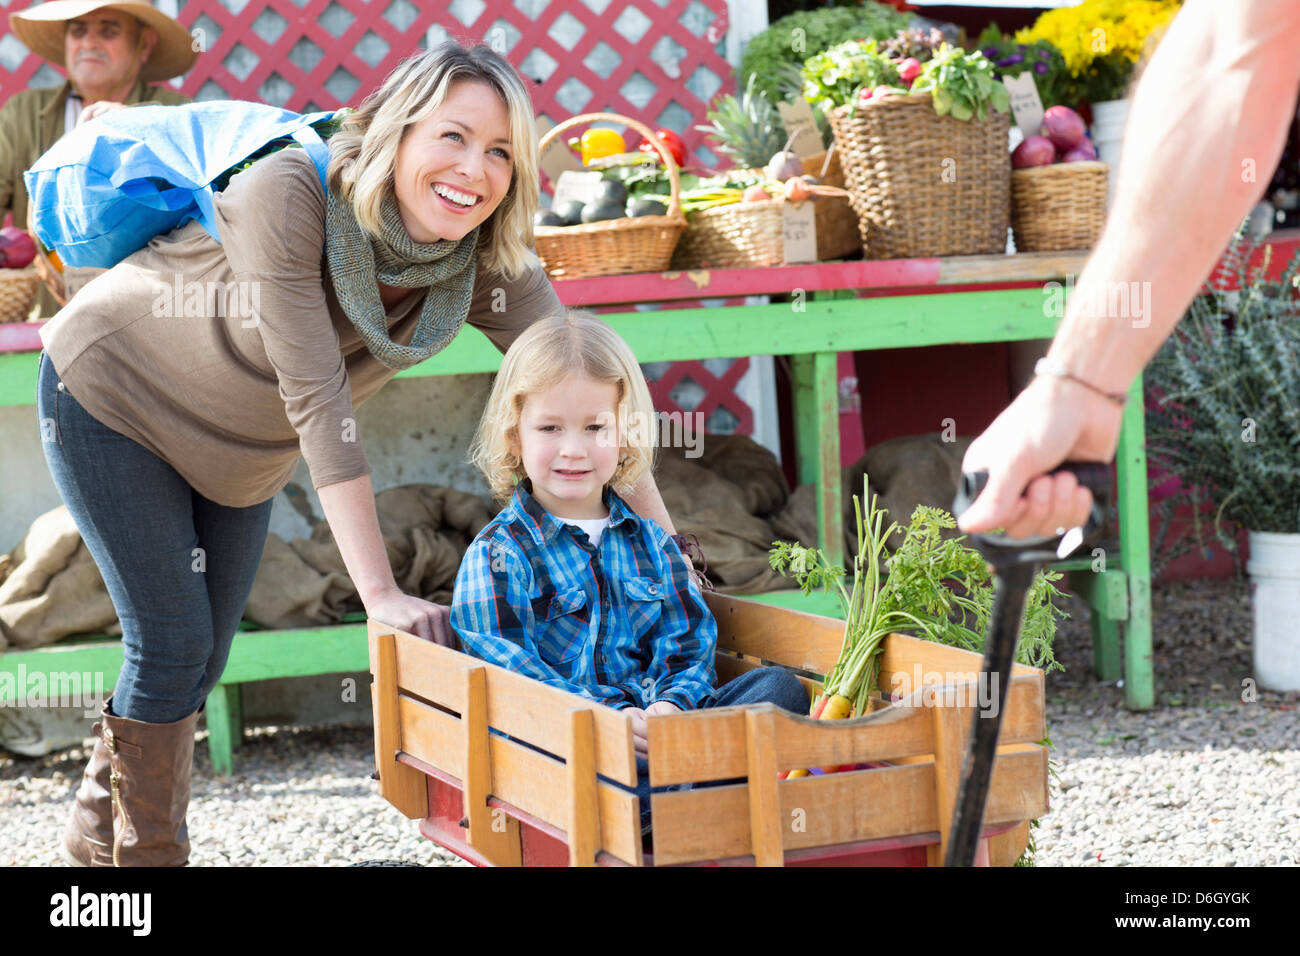 Family shopping at farmer's market Stock Photo